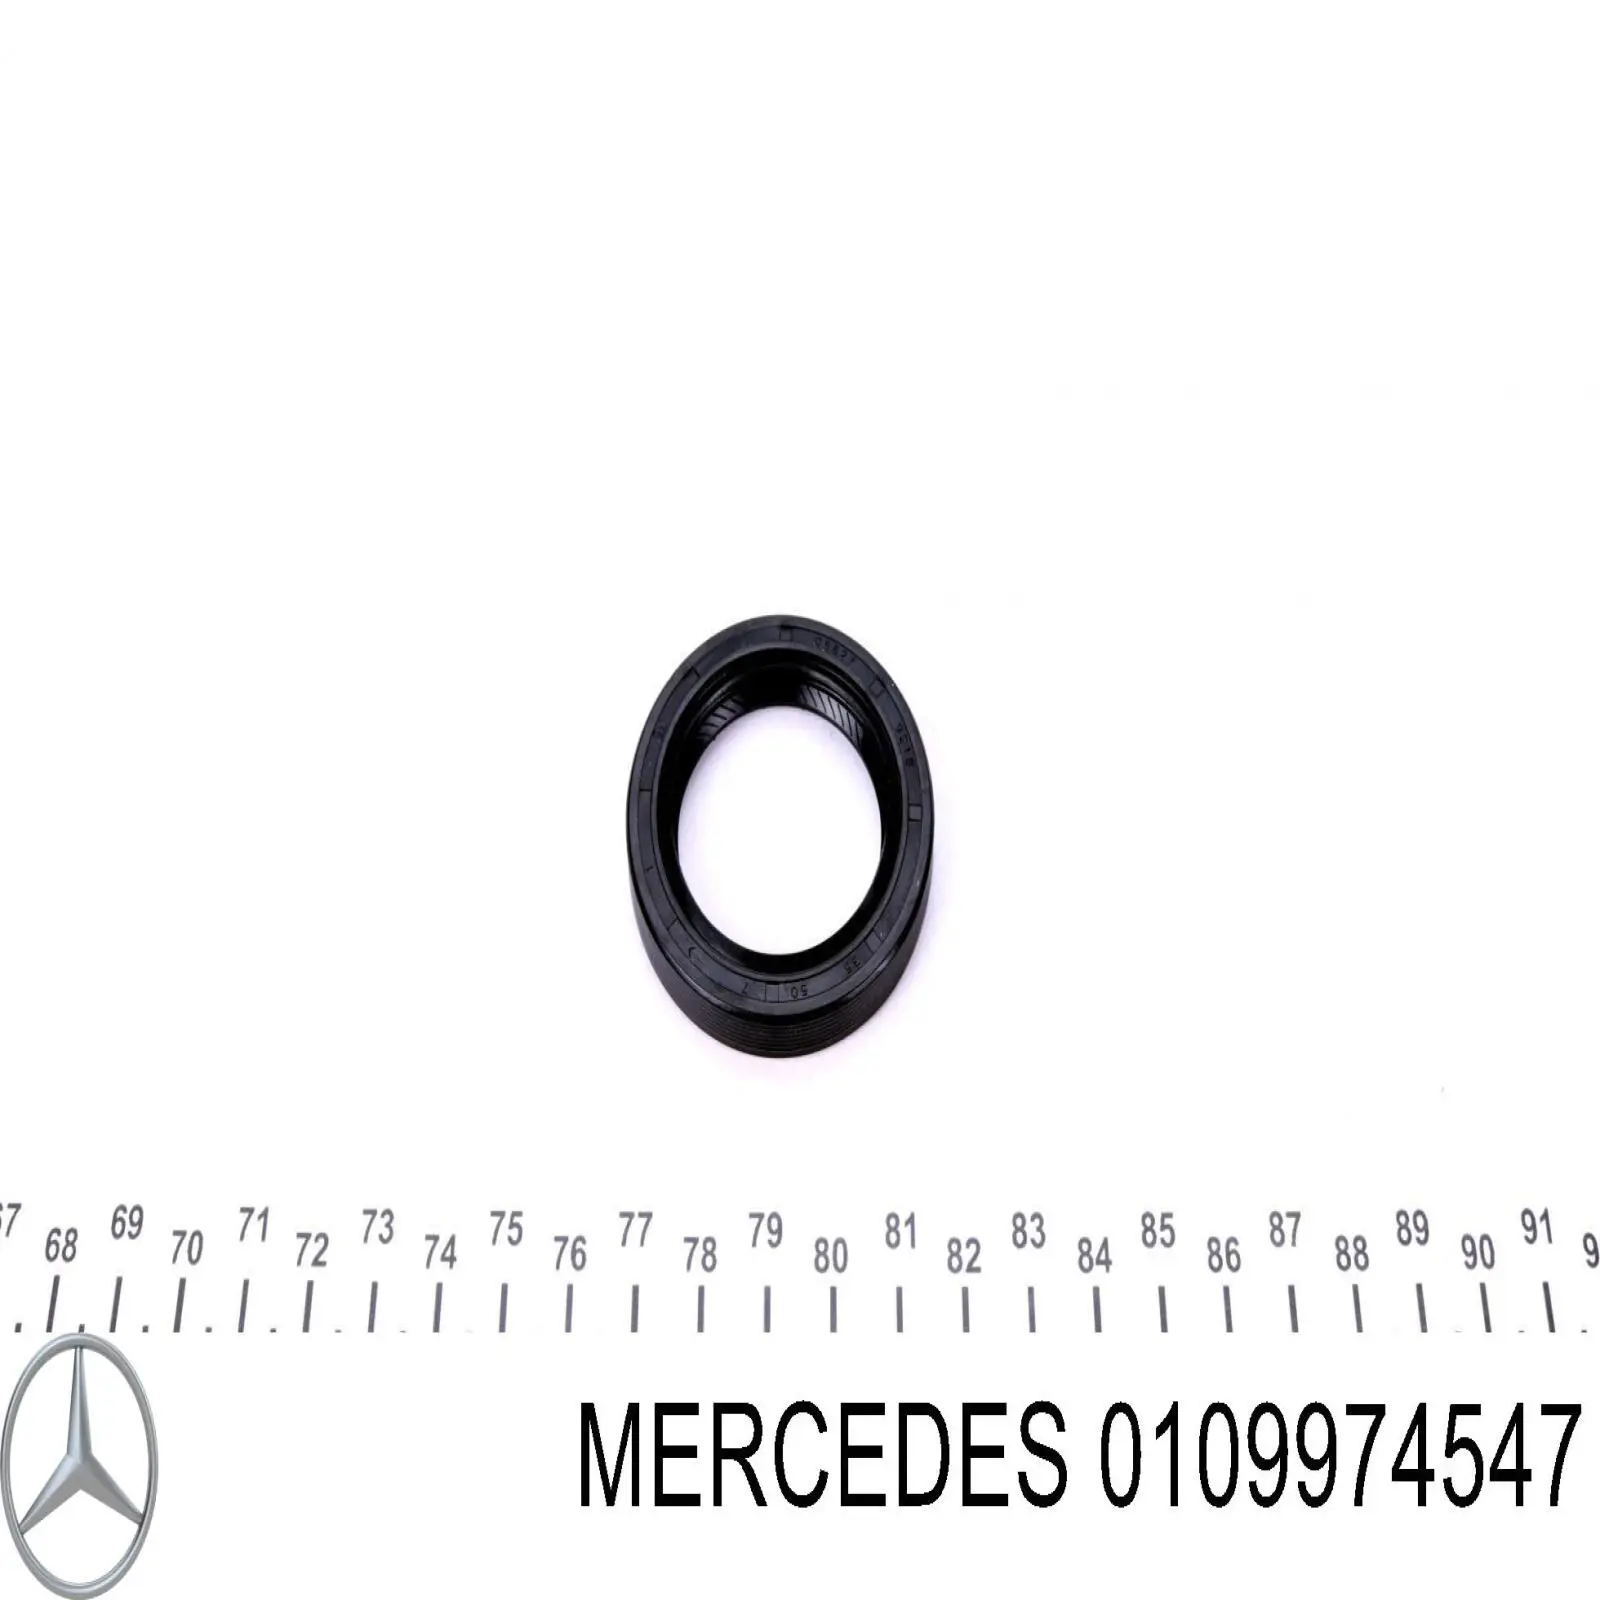 0109974547 Mercedes anillo reten caja de cambios